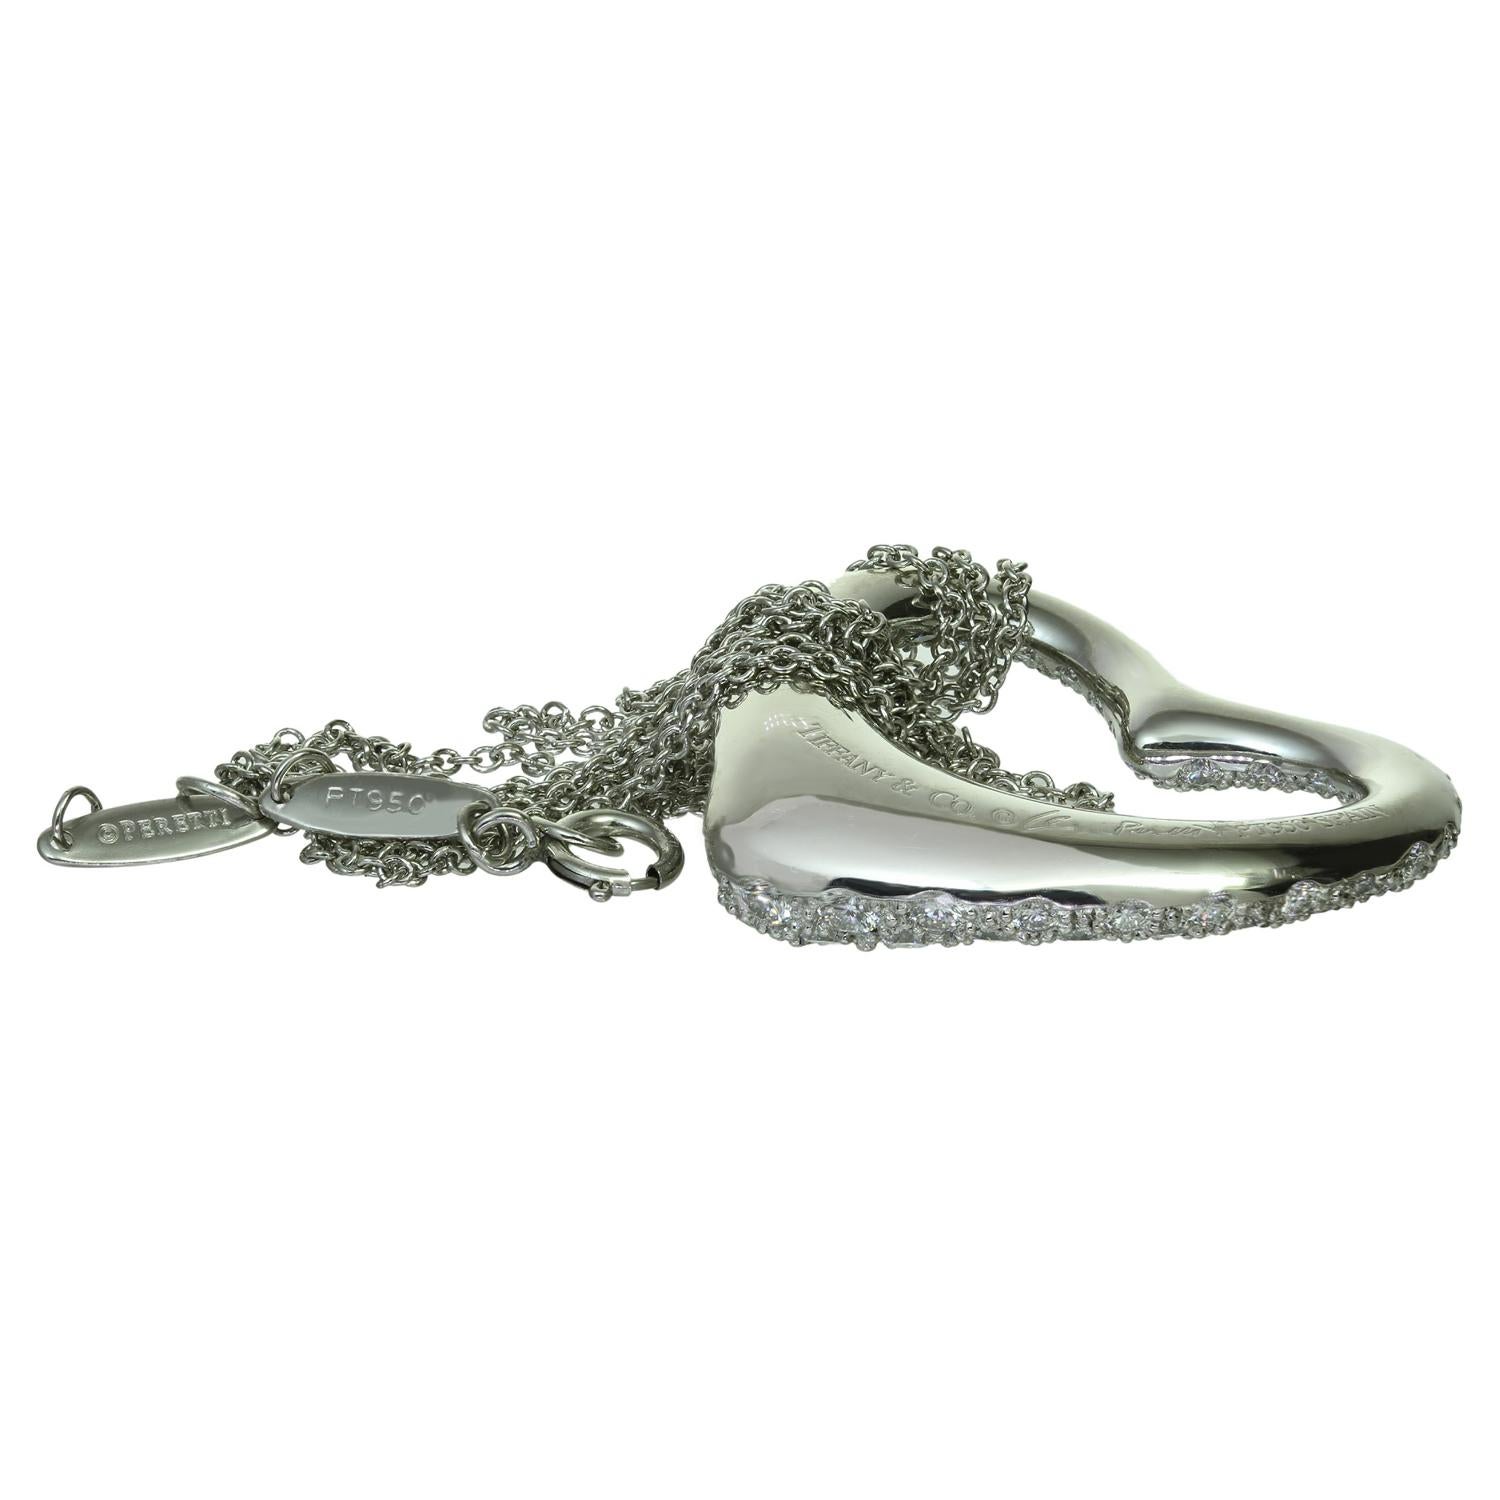 Tiffany & Co. Elsa Peretti Diamond Platinum Open Heart Pendant Necklace For Sale 2